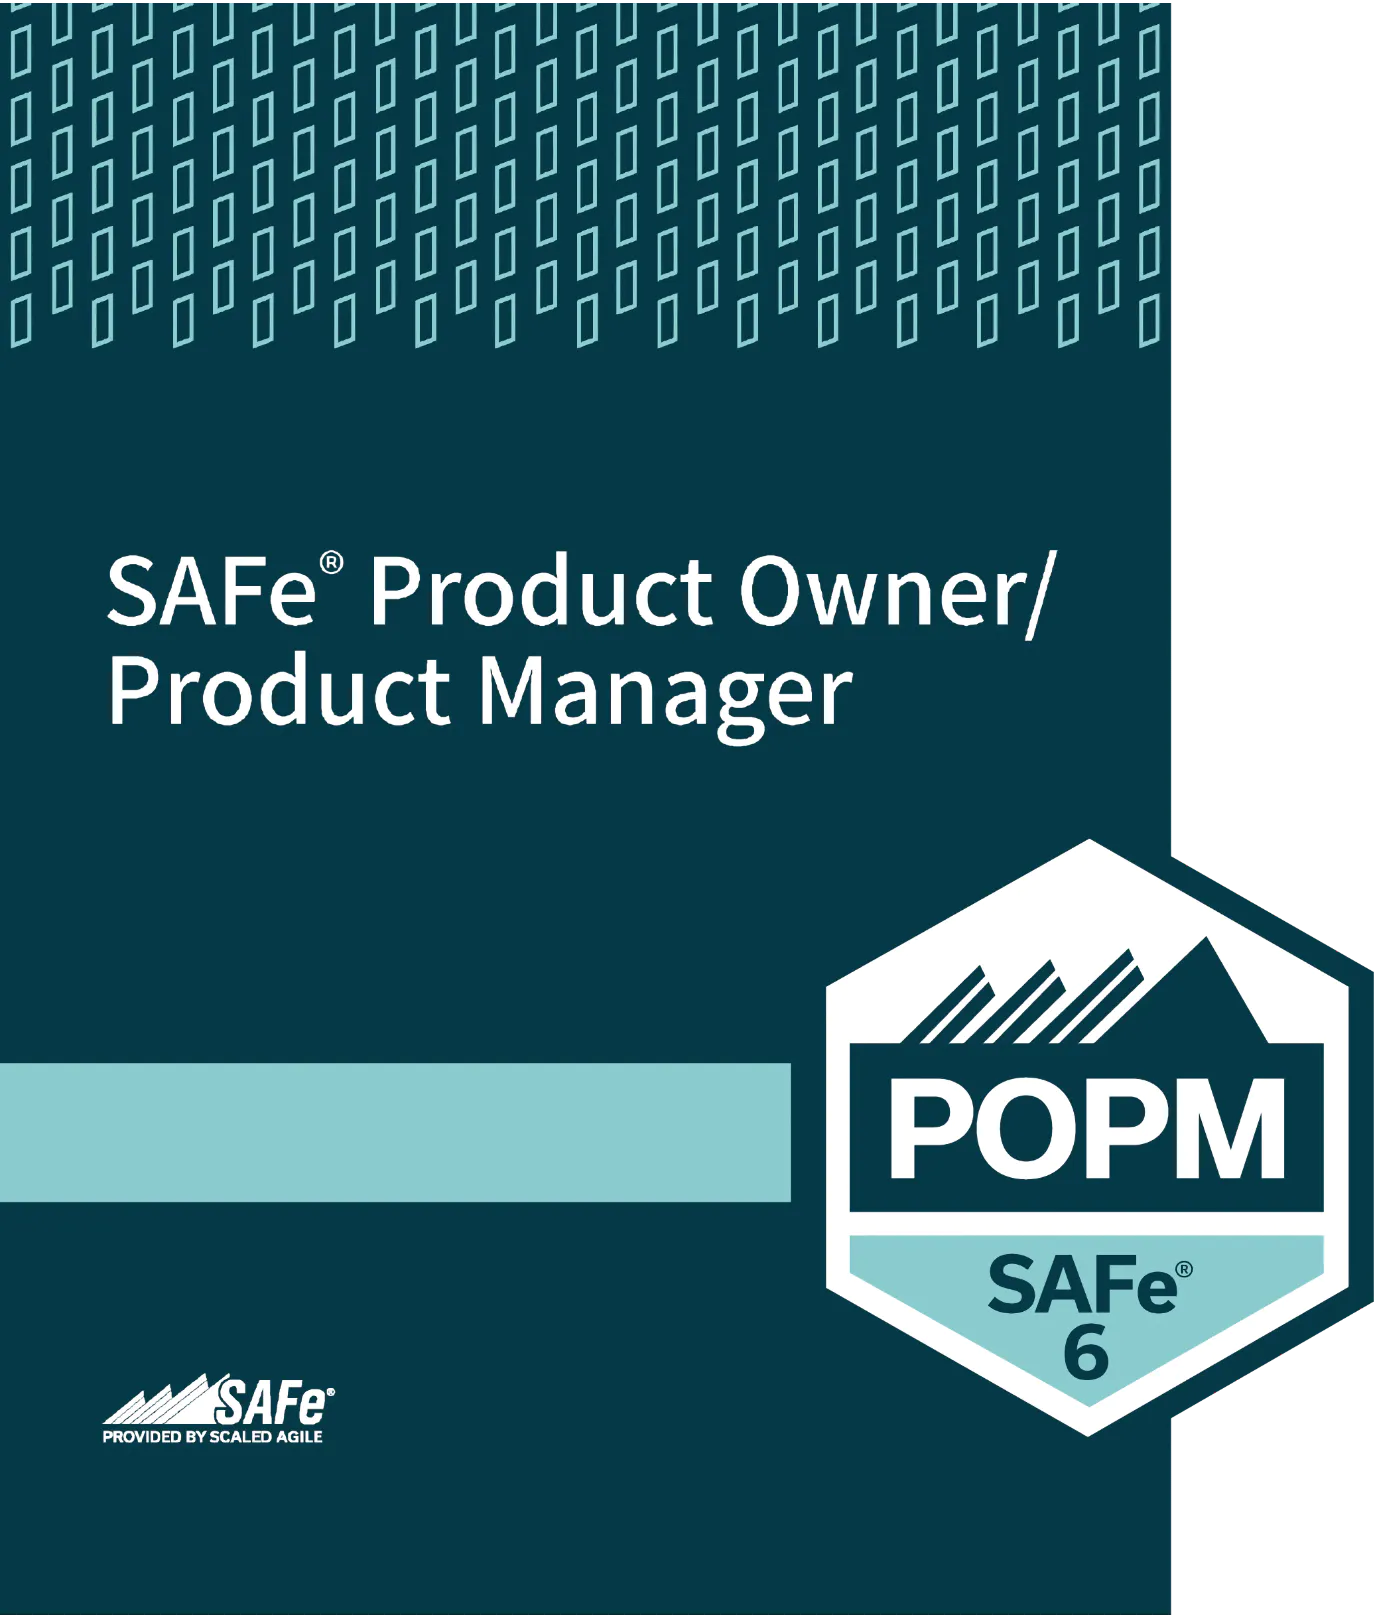 SAFe POPM Certificate